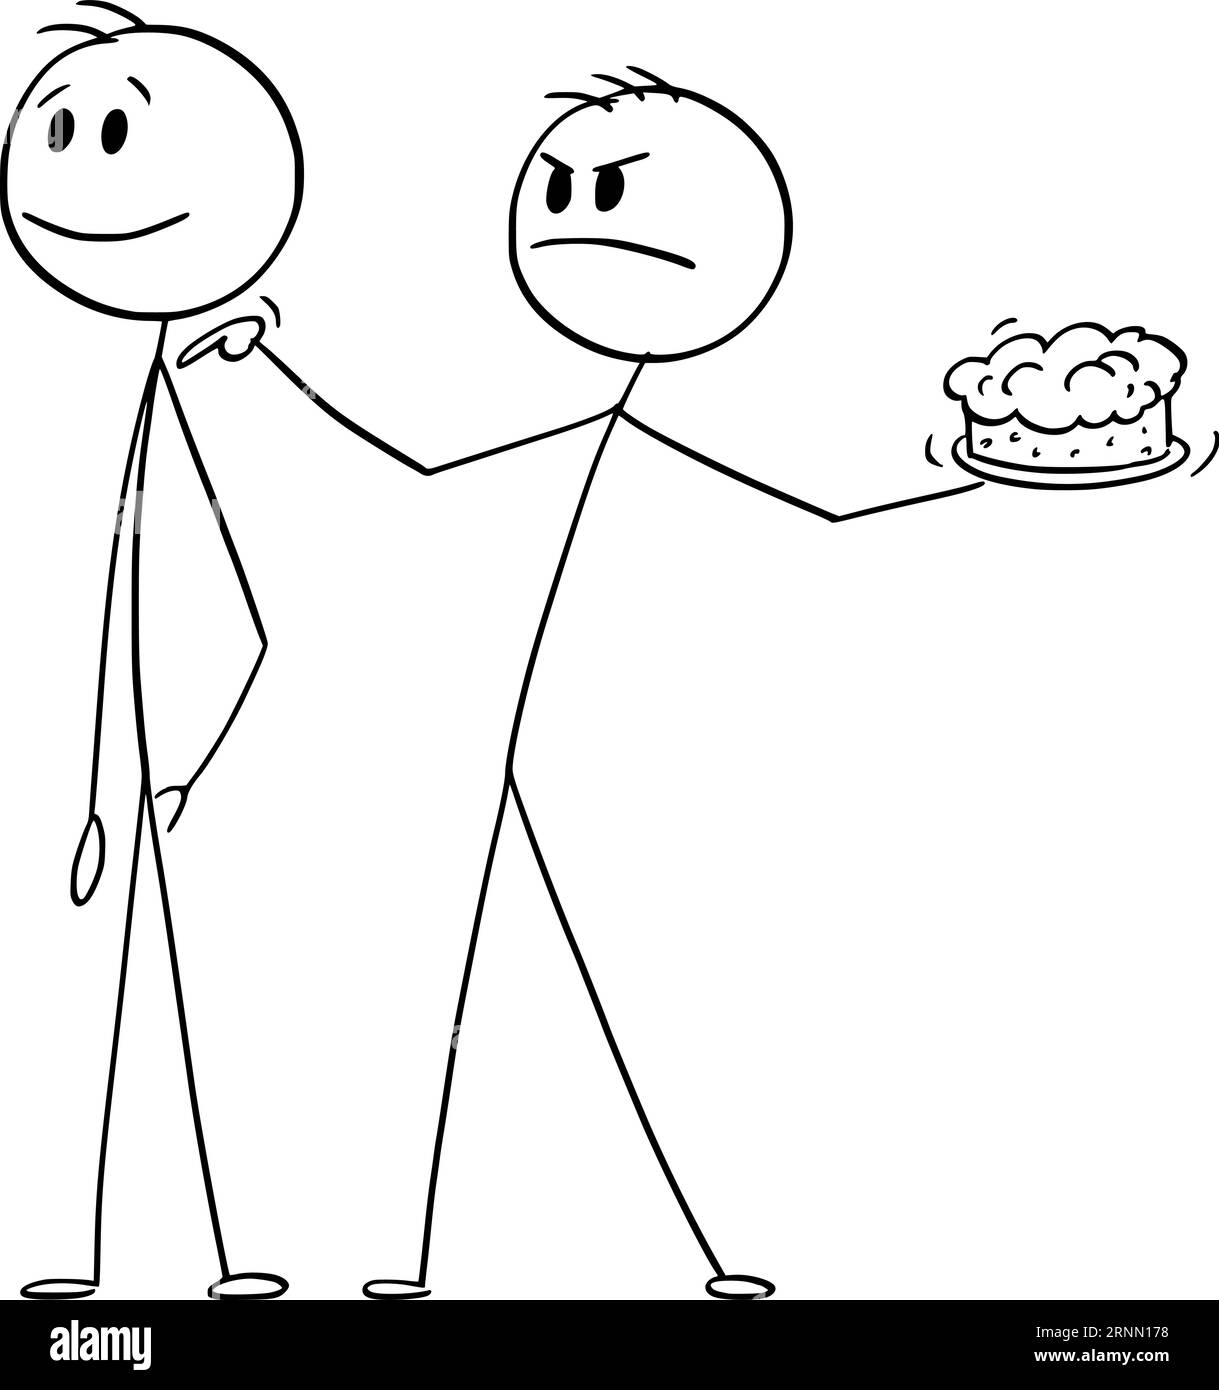 Persona arrabbiata pronta a lanciare la torta sul viso, illustrazione della figura del fumetto Vector Cartoon Stick Illustrazione Vettoriale